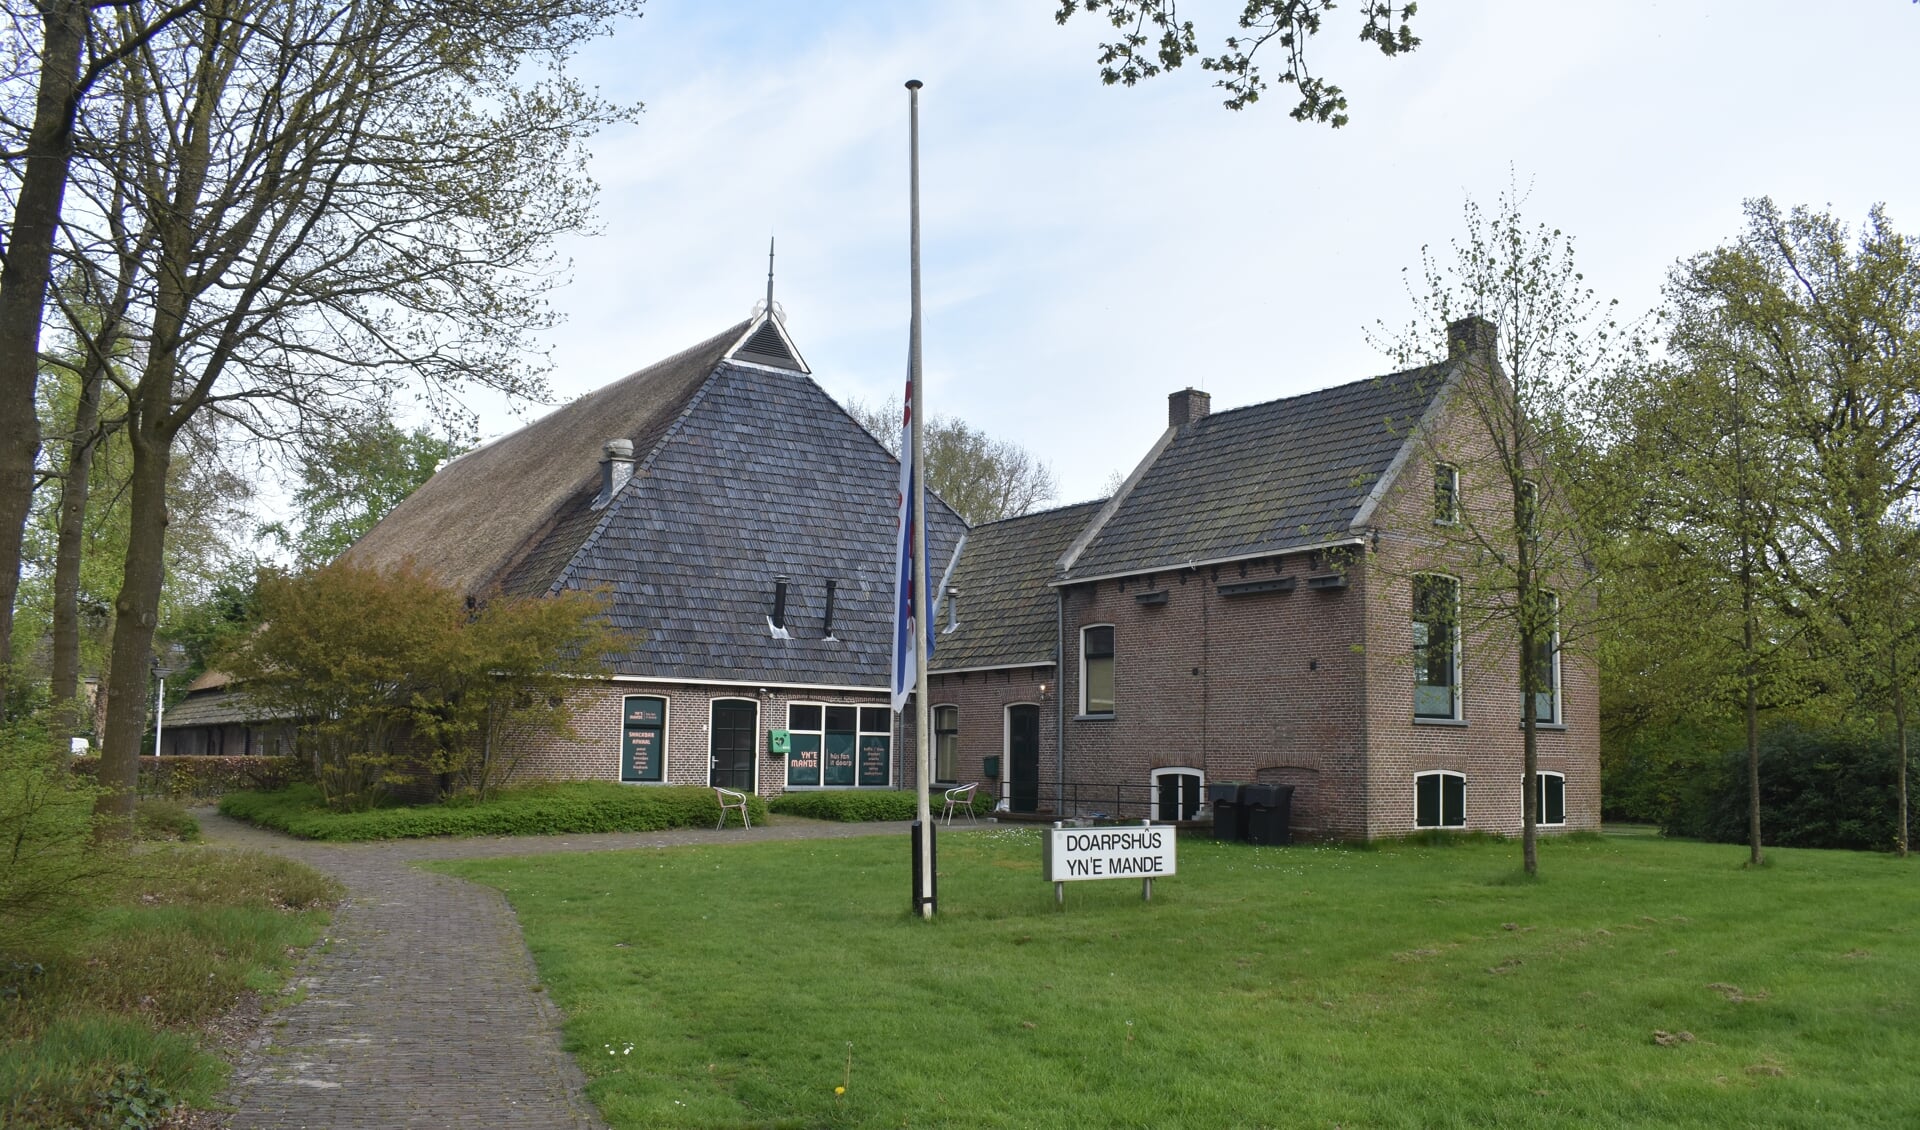 Dorpshuis Yn 'e Mande in Tytsjerk wordt wellicht verbouwd. De vlag hing 4 mei halfstok.